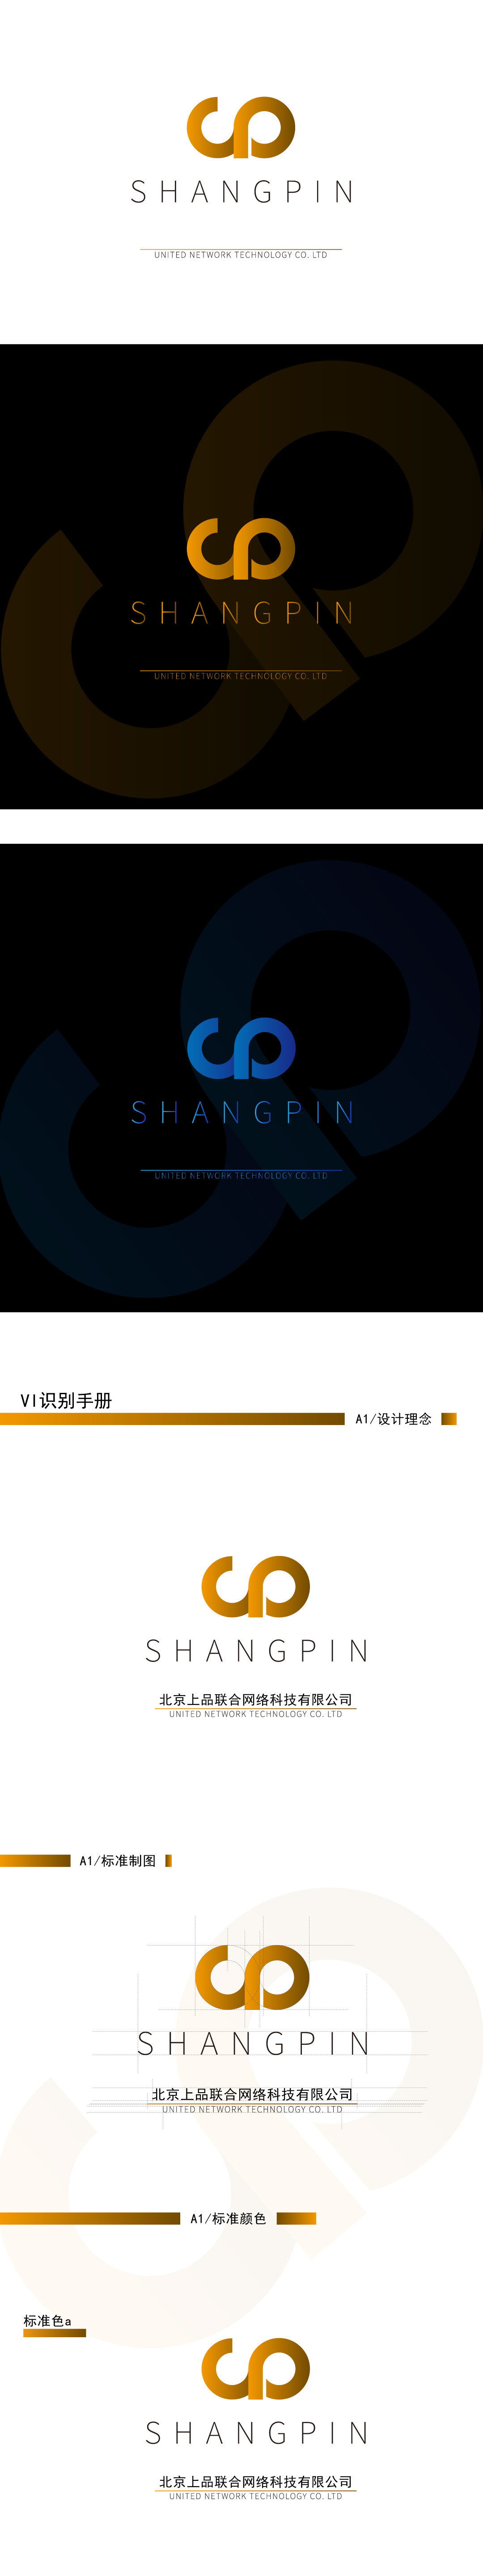 北京上品聯合網絡科技有限公司logo設計圖0